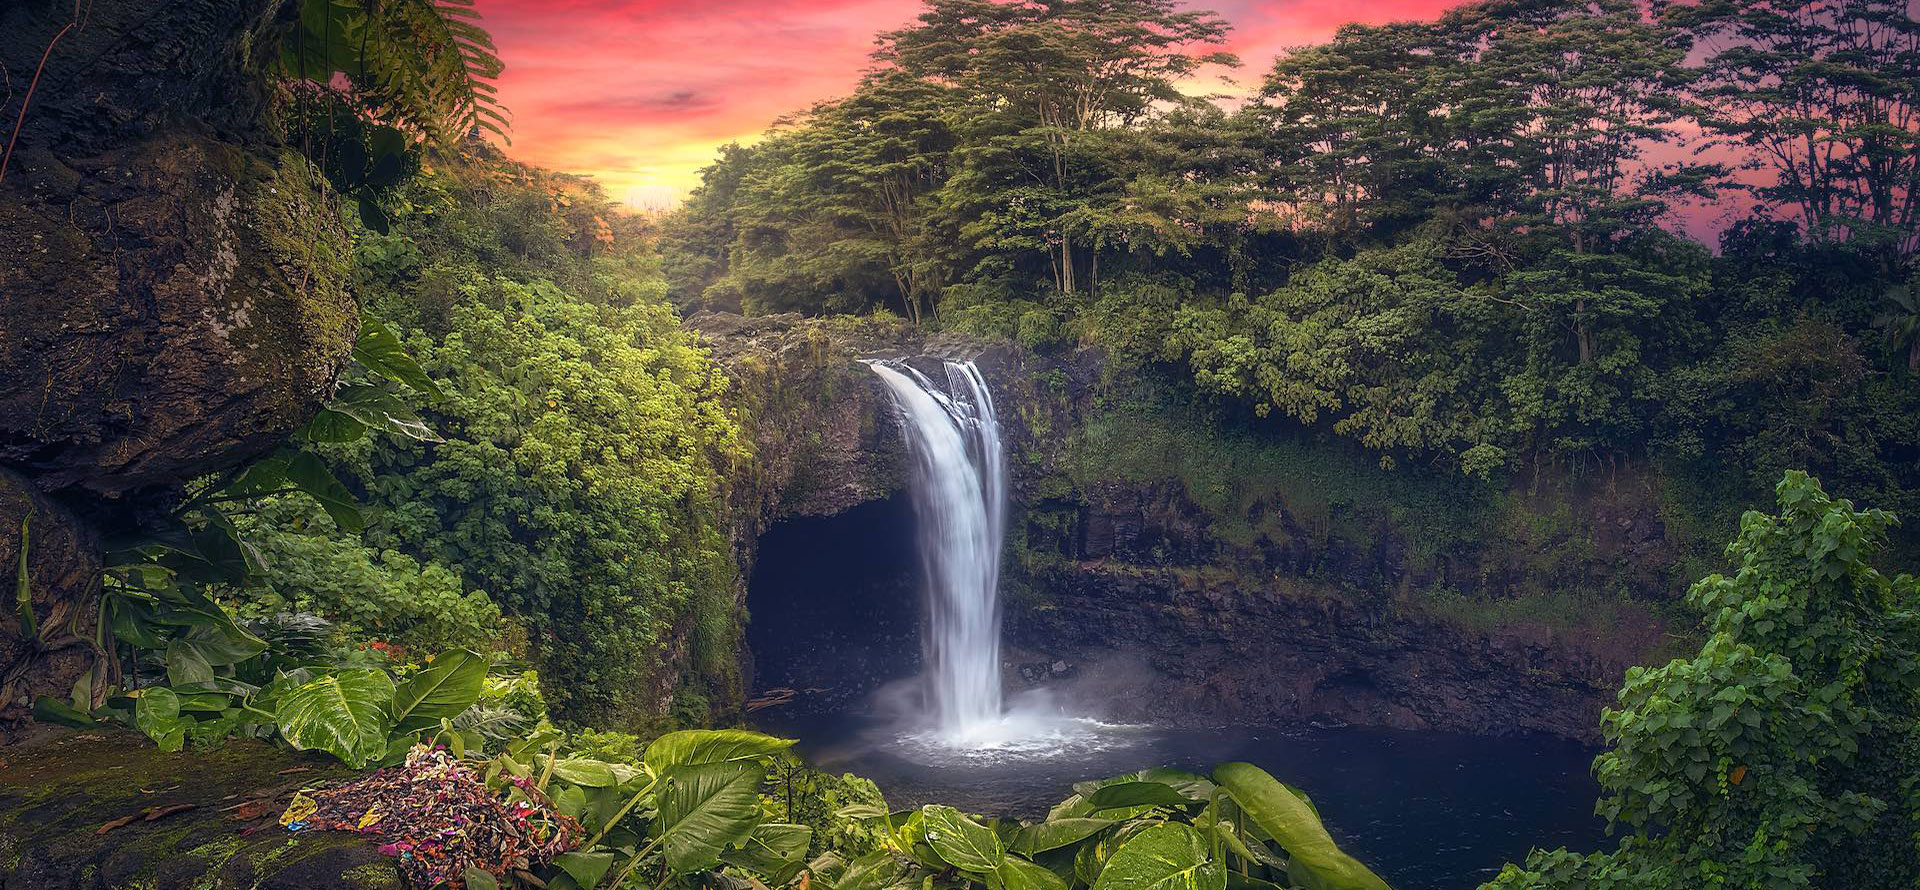 Waterfall in Big Island.